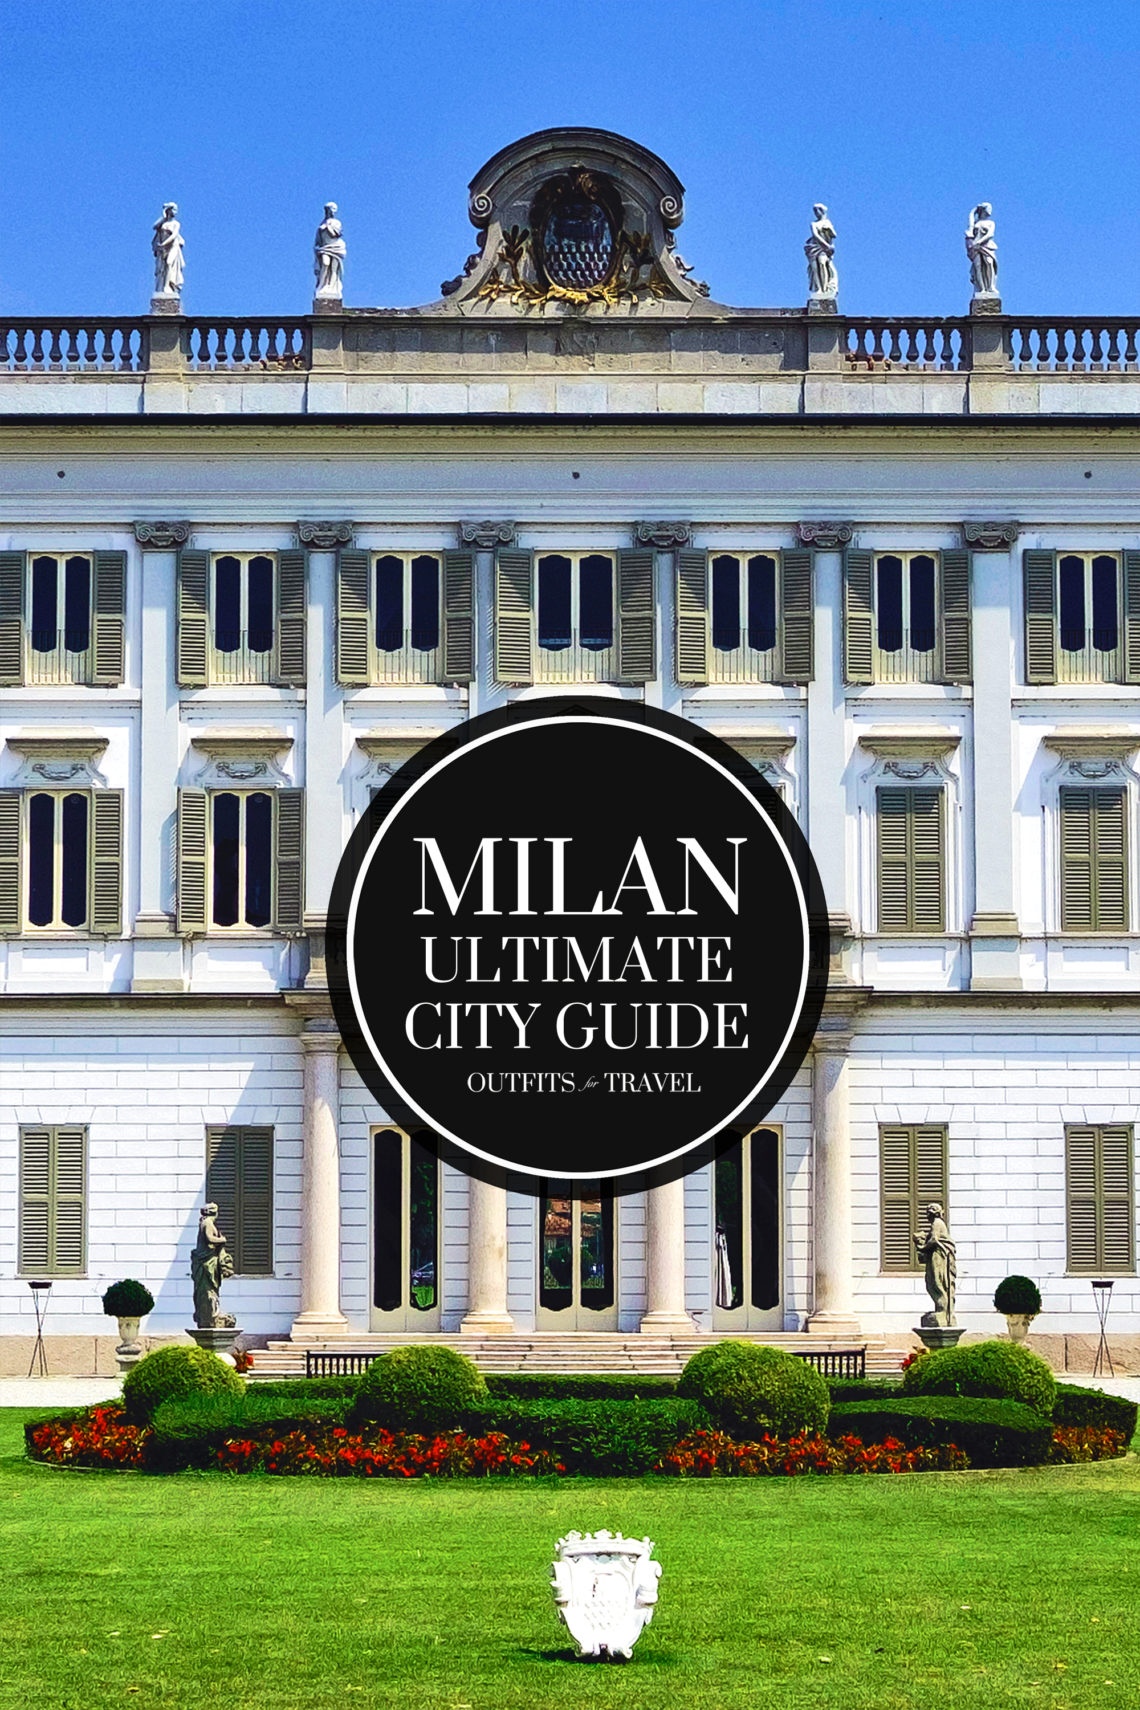 Milan City Guide